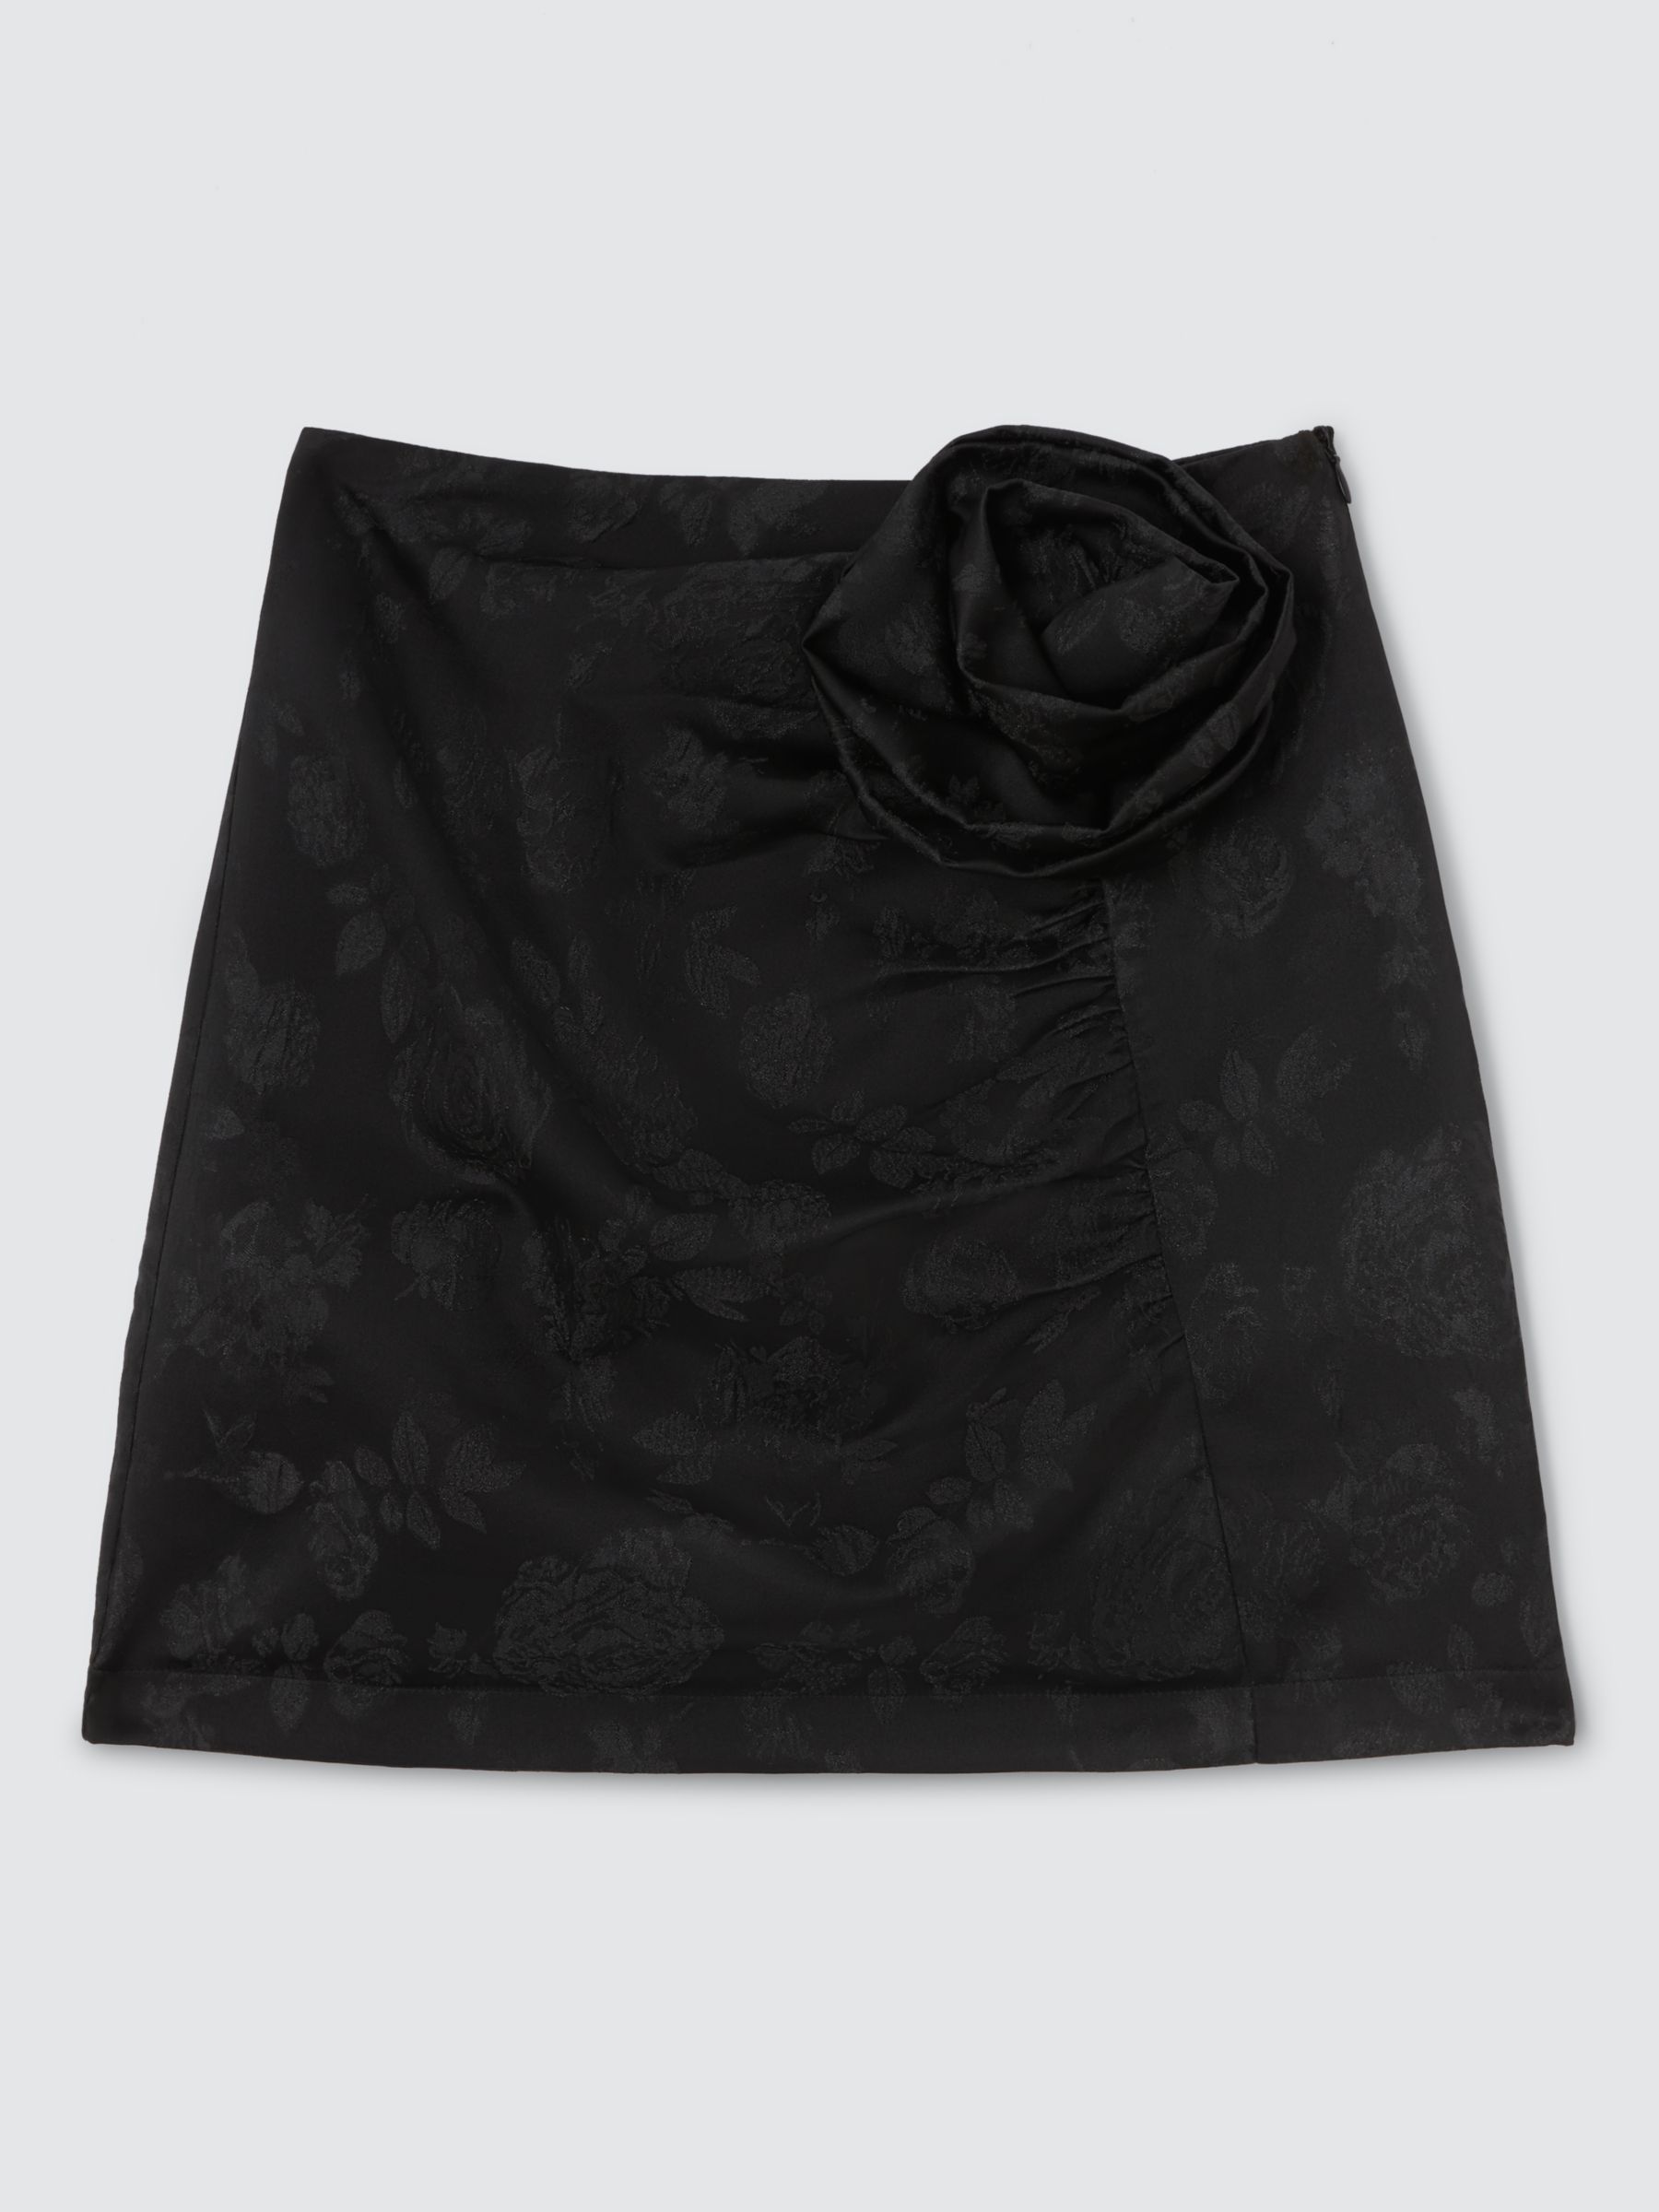 Sister Jane Gallery Rosete Skirt, Black, 8